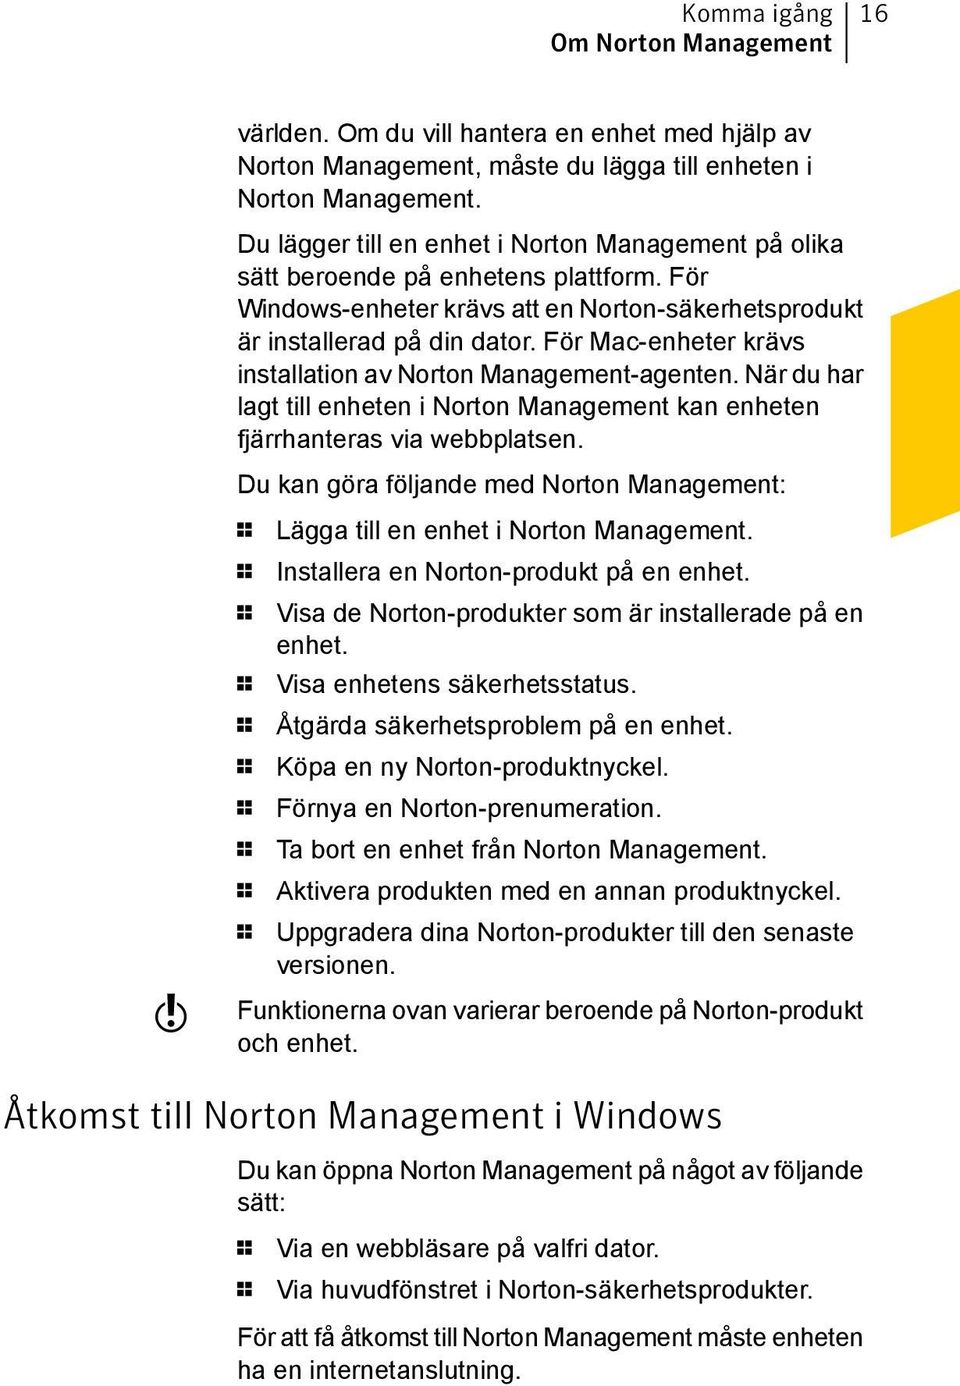 För Mac-enheter krävs installation av Norton Management-agenten. När du har lagt till enheten i Norton Management kan enheten fjärrhanteras via webbplatsen.